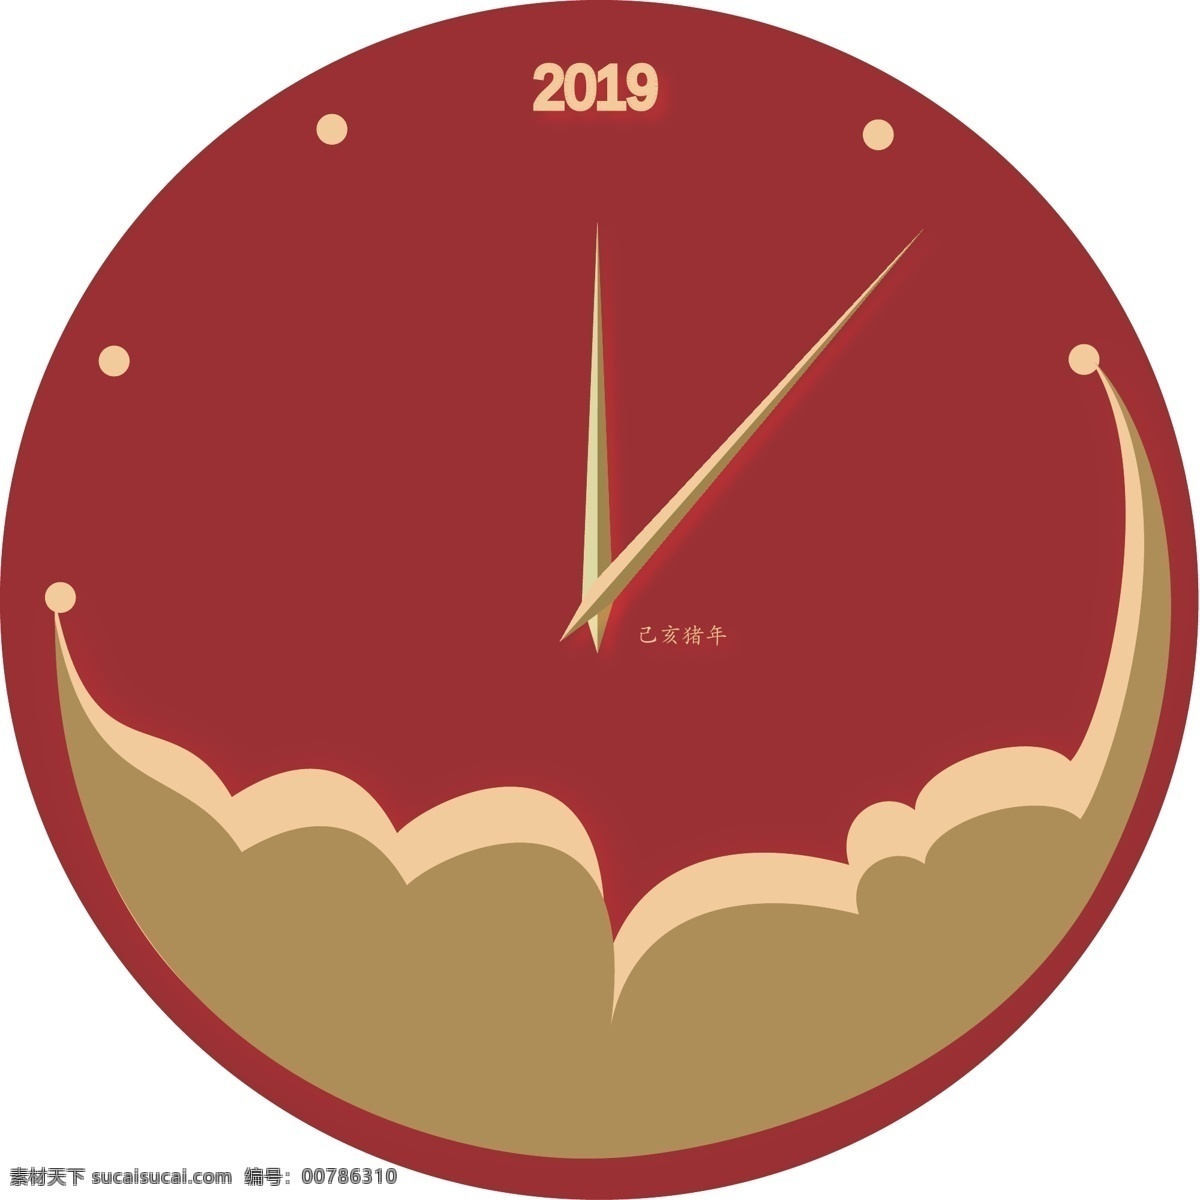 2019 年 创意 钟表 2019年 己亥猪年 立体风格 创意钟表 暗红 烫金 迎新 云朵 新年新气象 指针 免扣png图